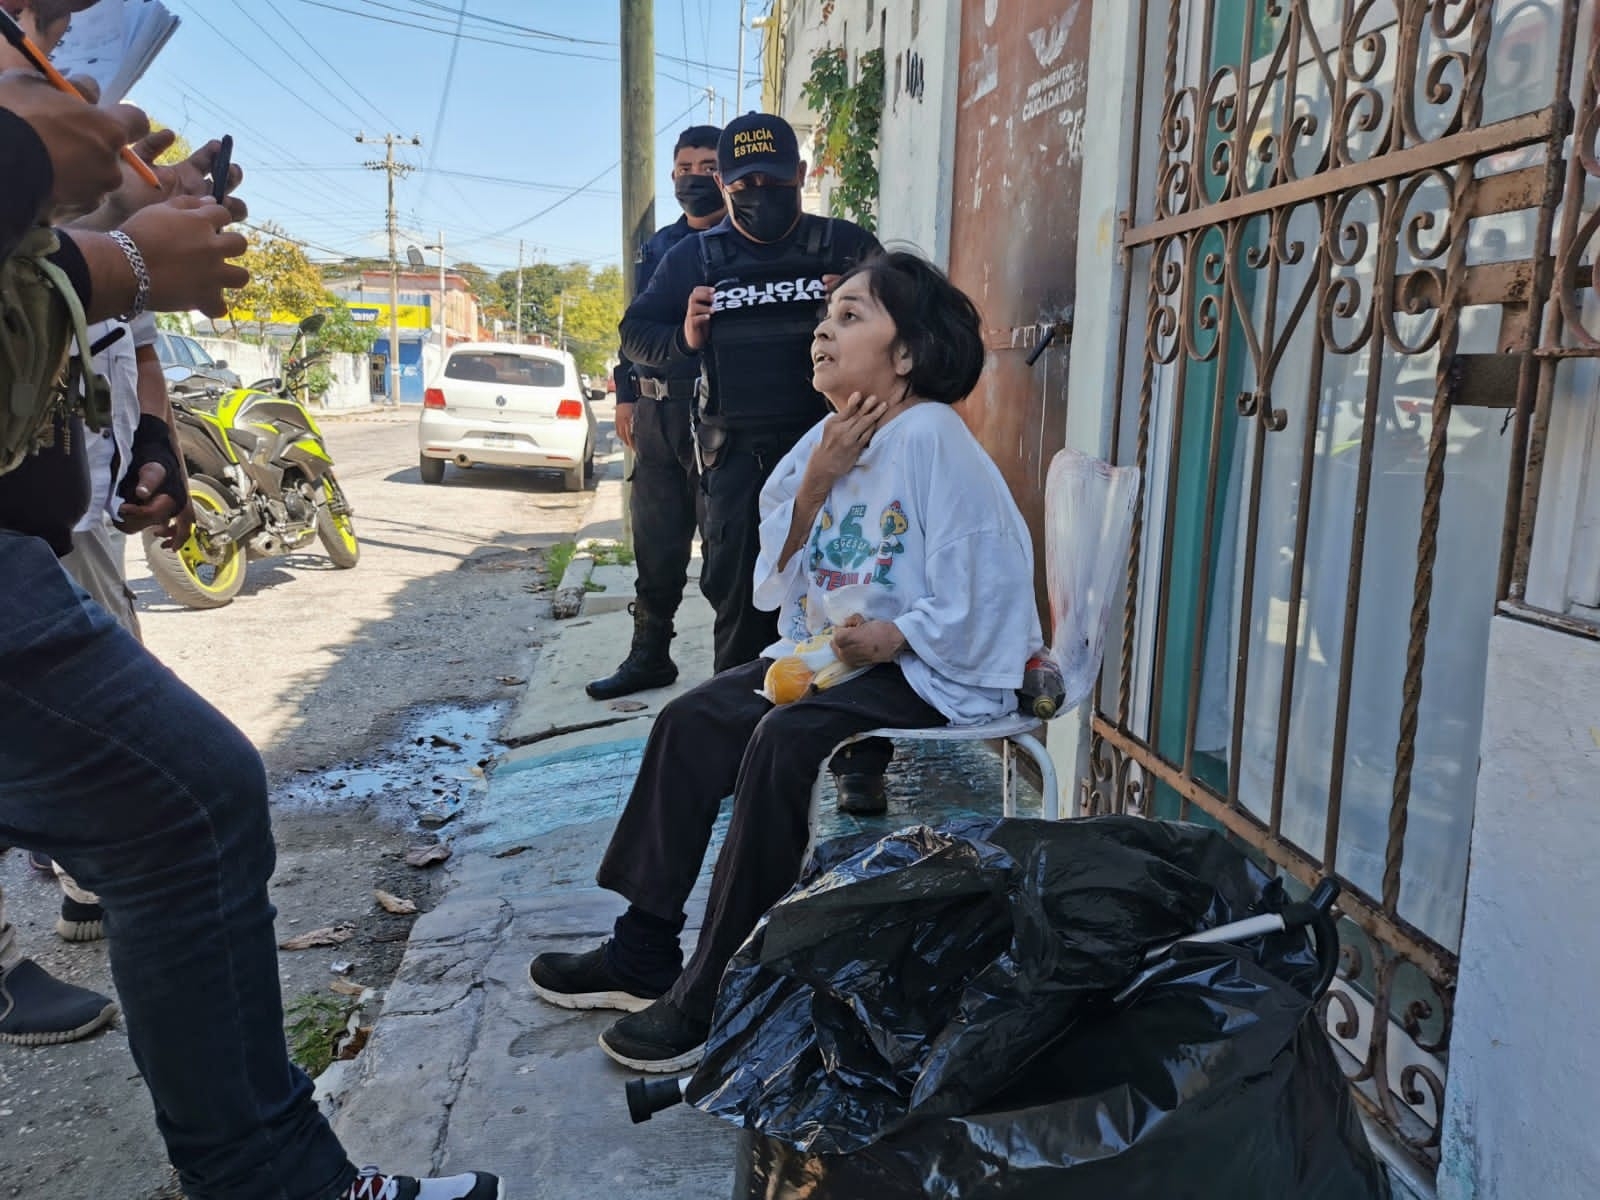 La mujer se encontraba con una bolsa negra con sus pertenencias en una calle de Ciudad del Carmen